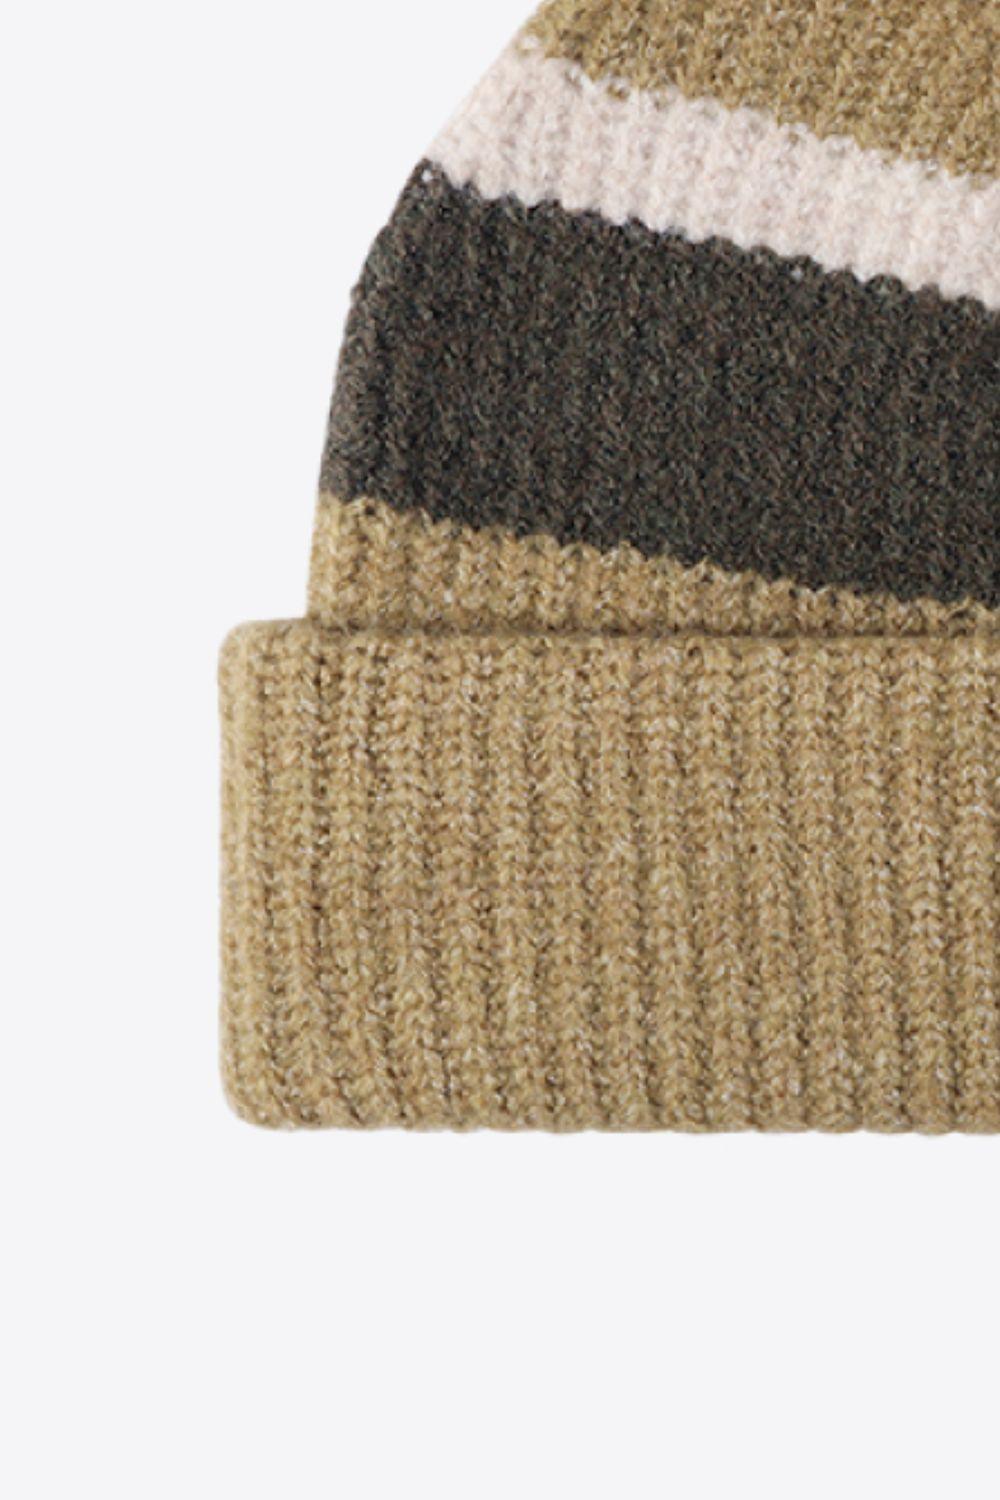 Tricolor Cuffed Knit Beanie - Flyclothing LLC